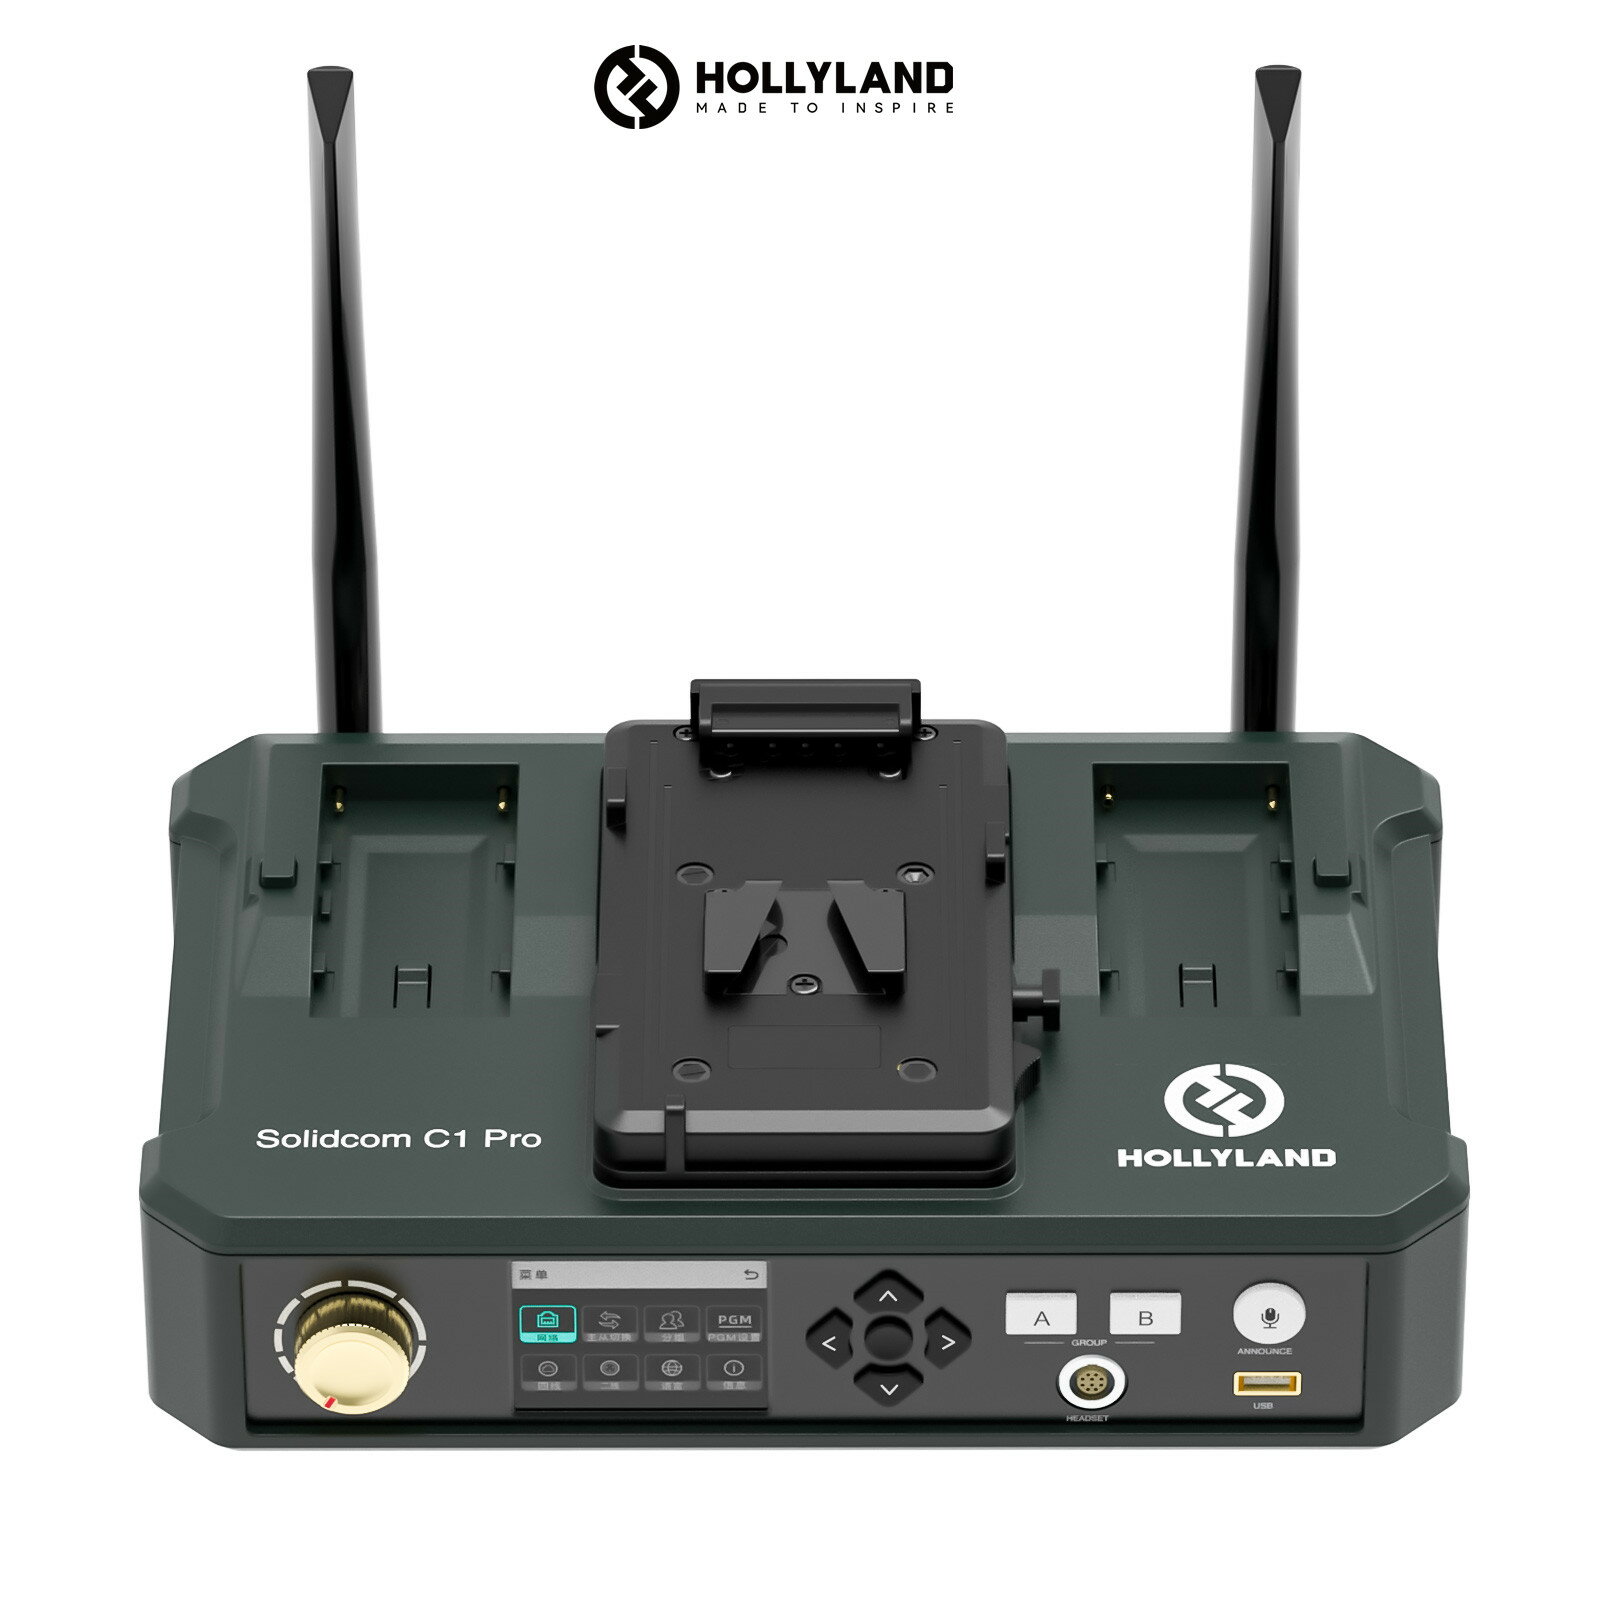 Hollyland Solidcom C1 Proワイヤレスインカム HUBベース 追加購入で2～27人までの人数が同時通話 Solidcom C1 Proベースステーション 多彩な通話システム構成 小型軽量ヘッドセット 設定不要 箱から出してすぐに使える同時通話システム